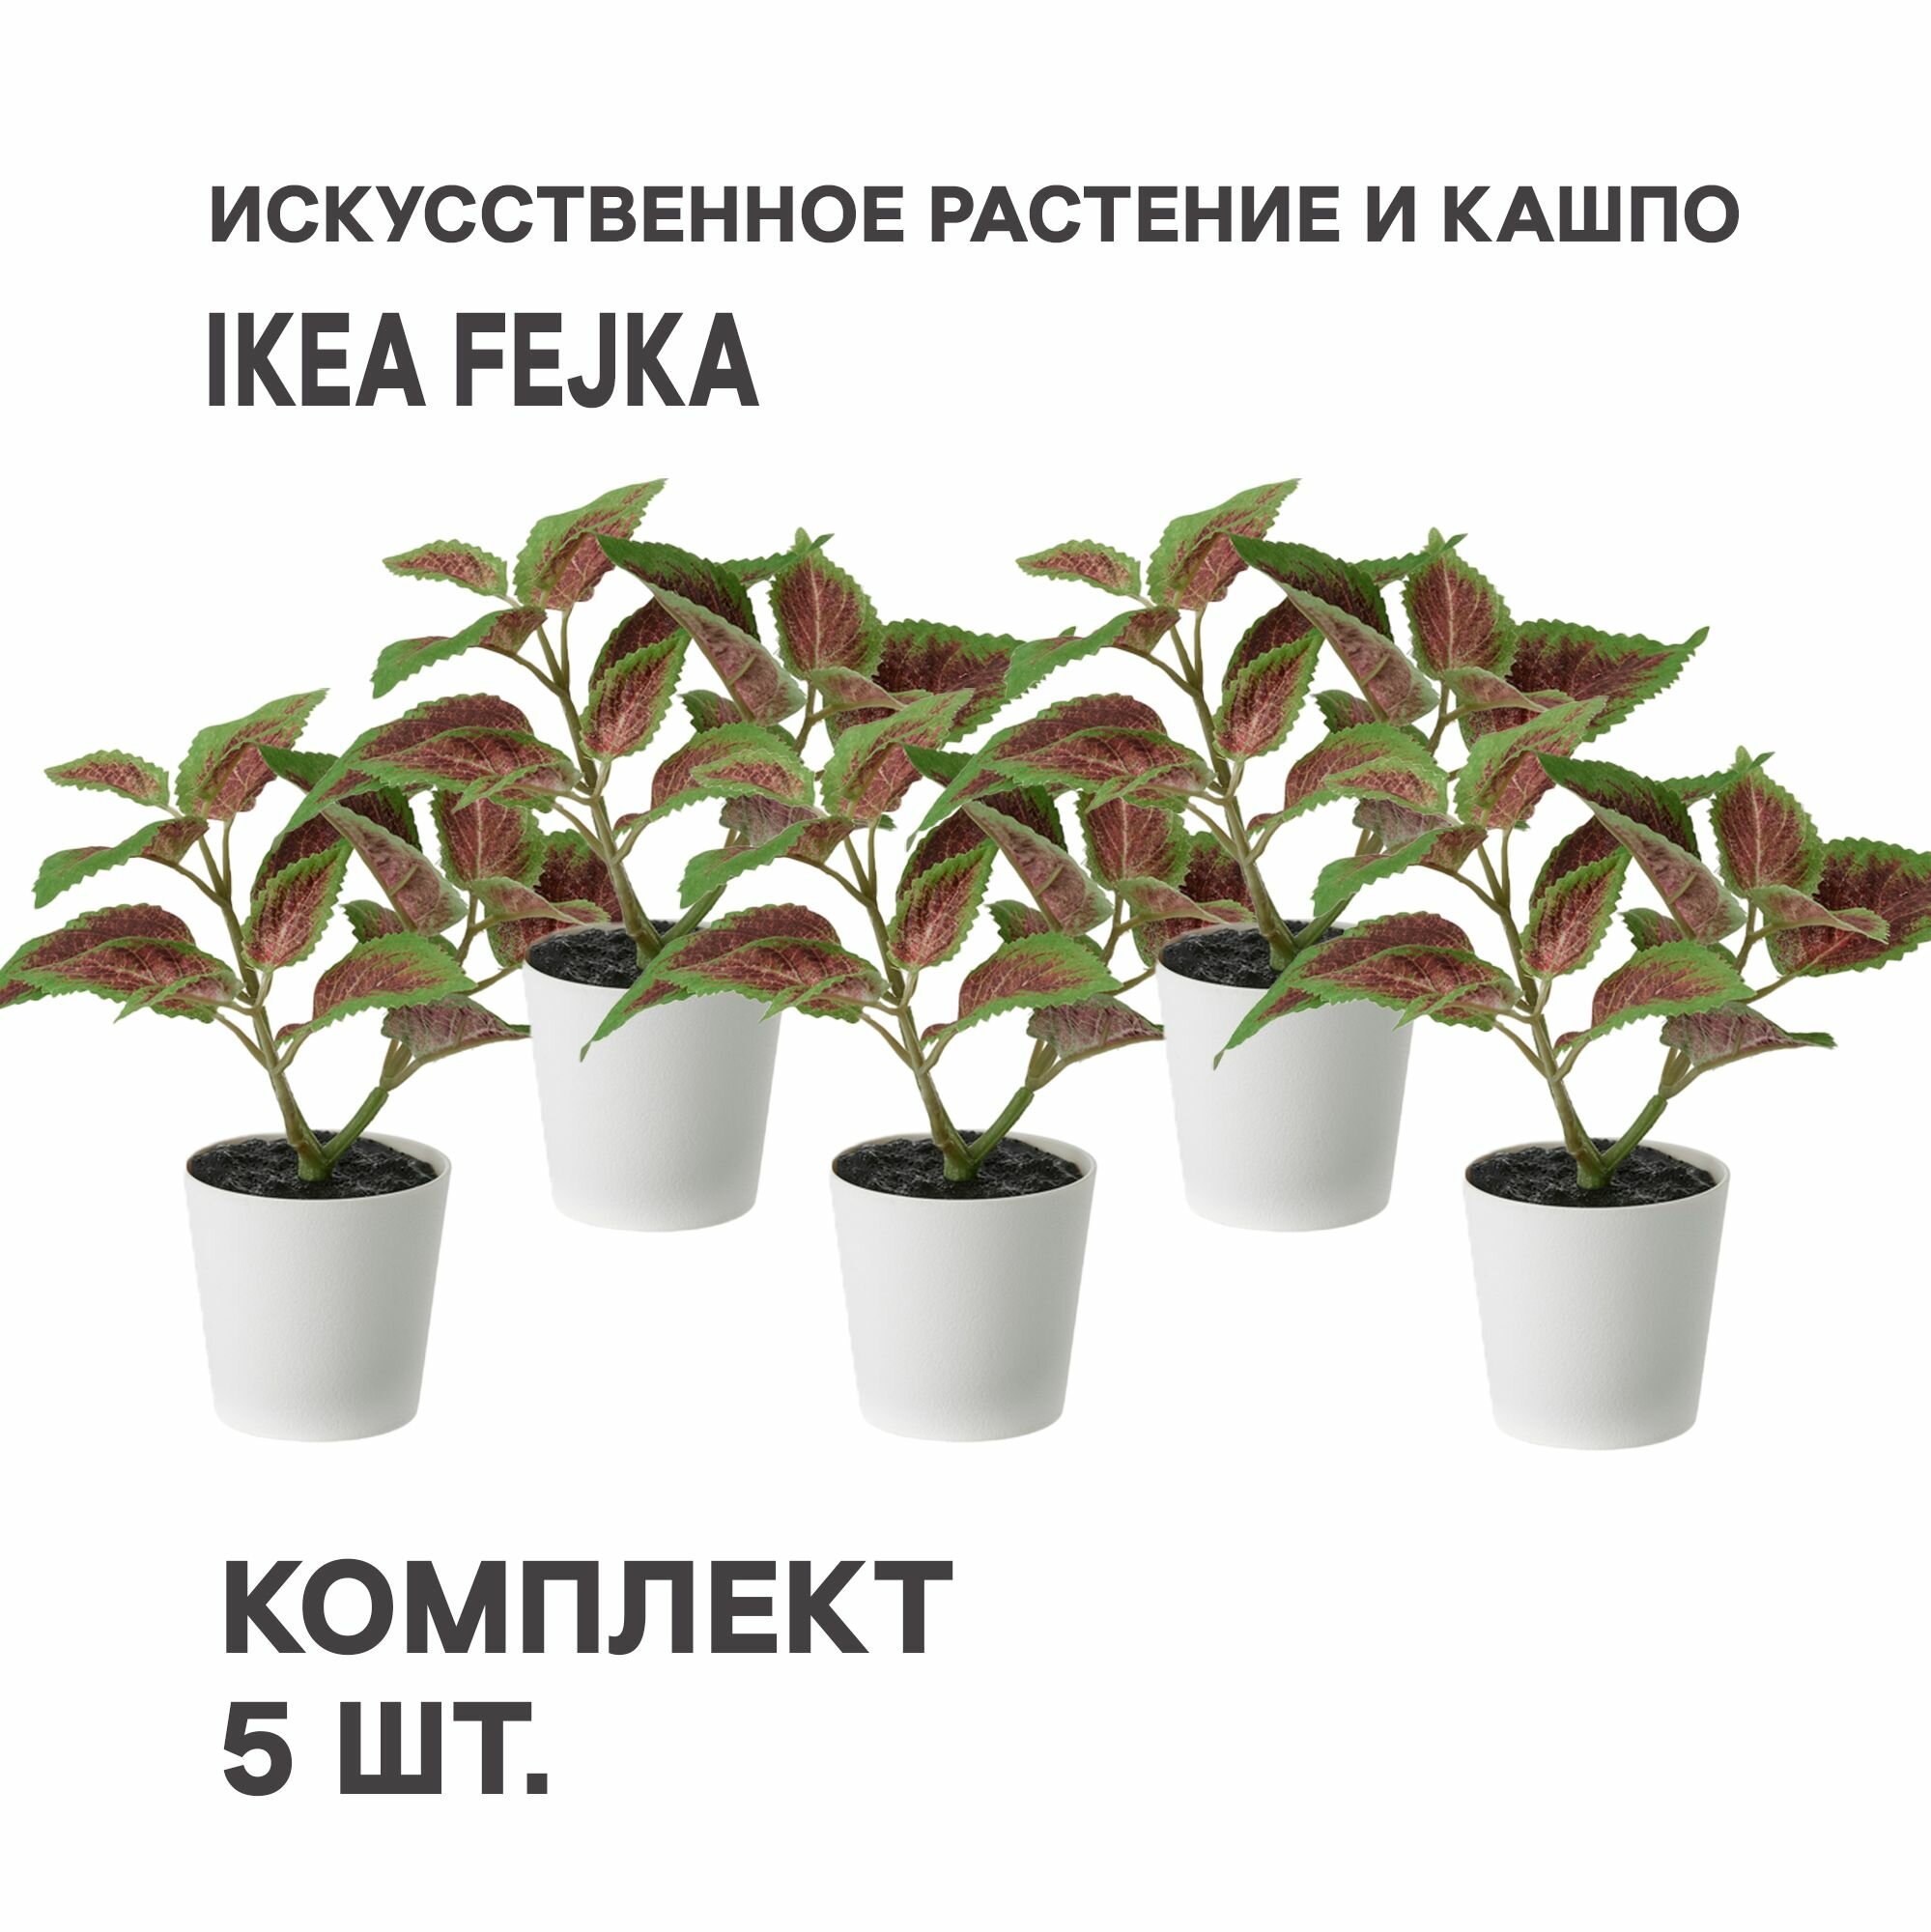 Комплект 5 шт. Искусственное растение и кашпо IKEA FEJKA фейка 6 см д/дома/улицы Цветная крапива